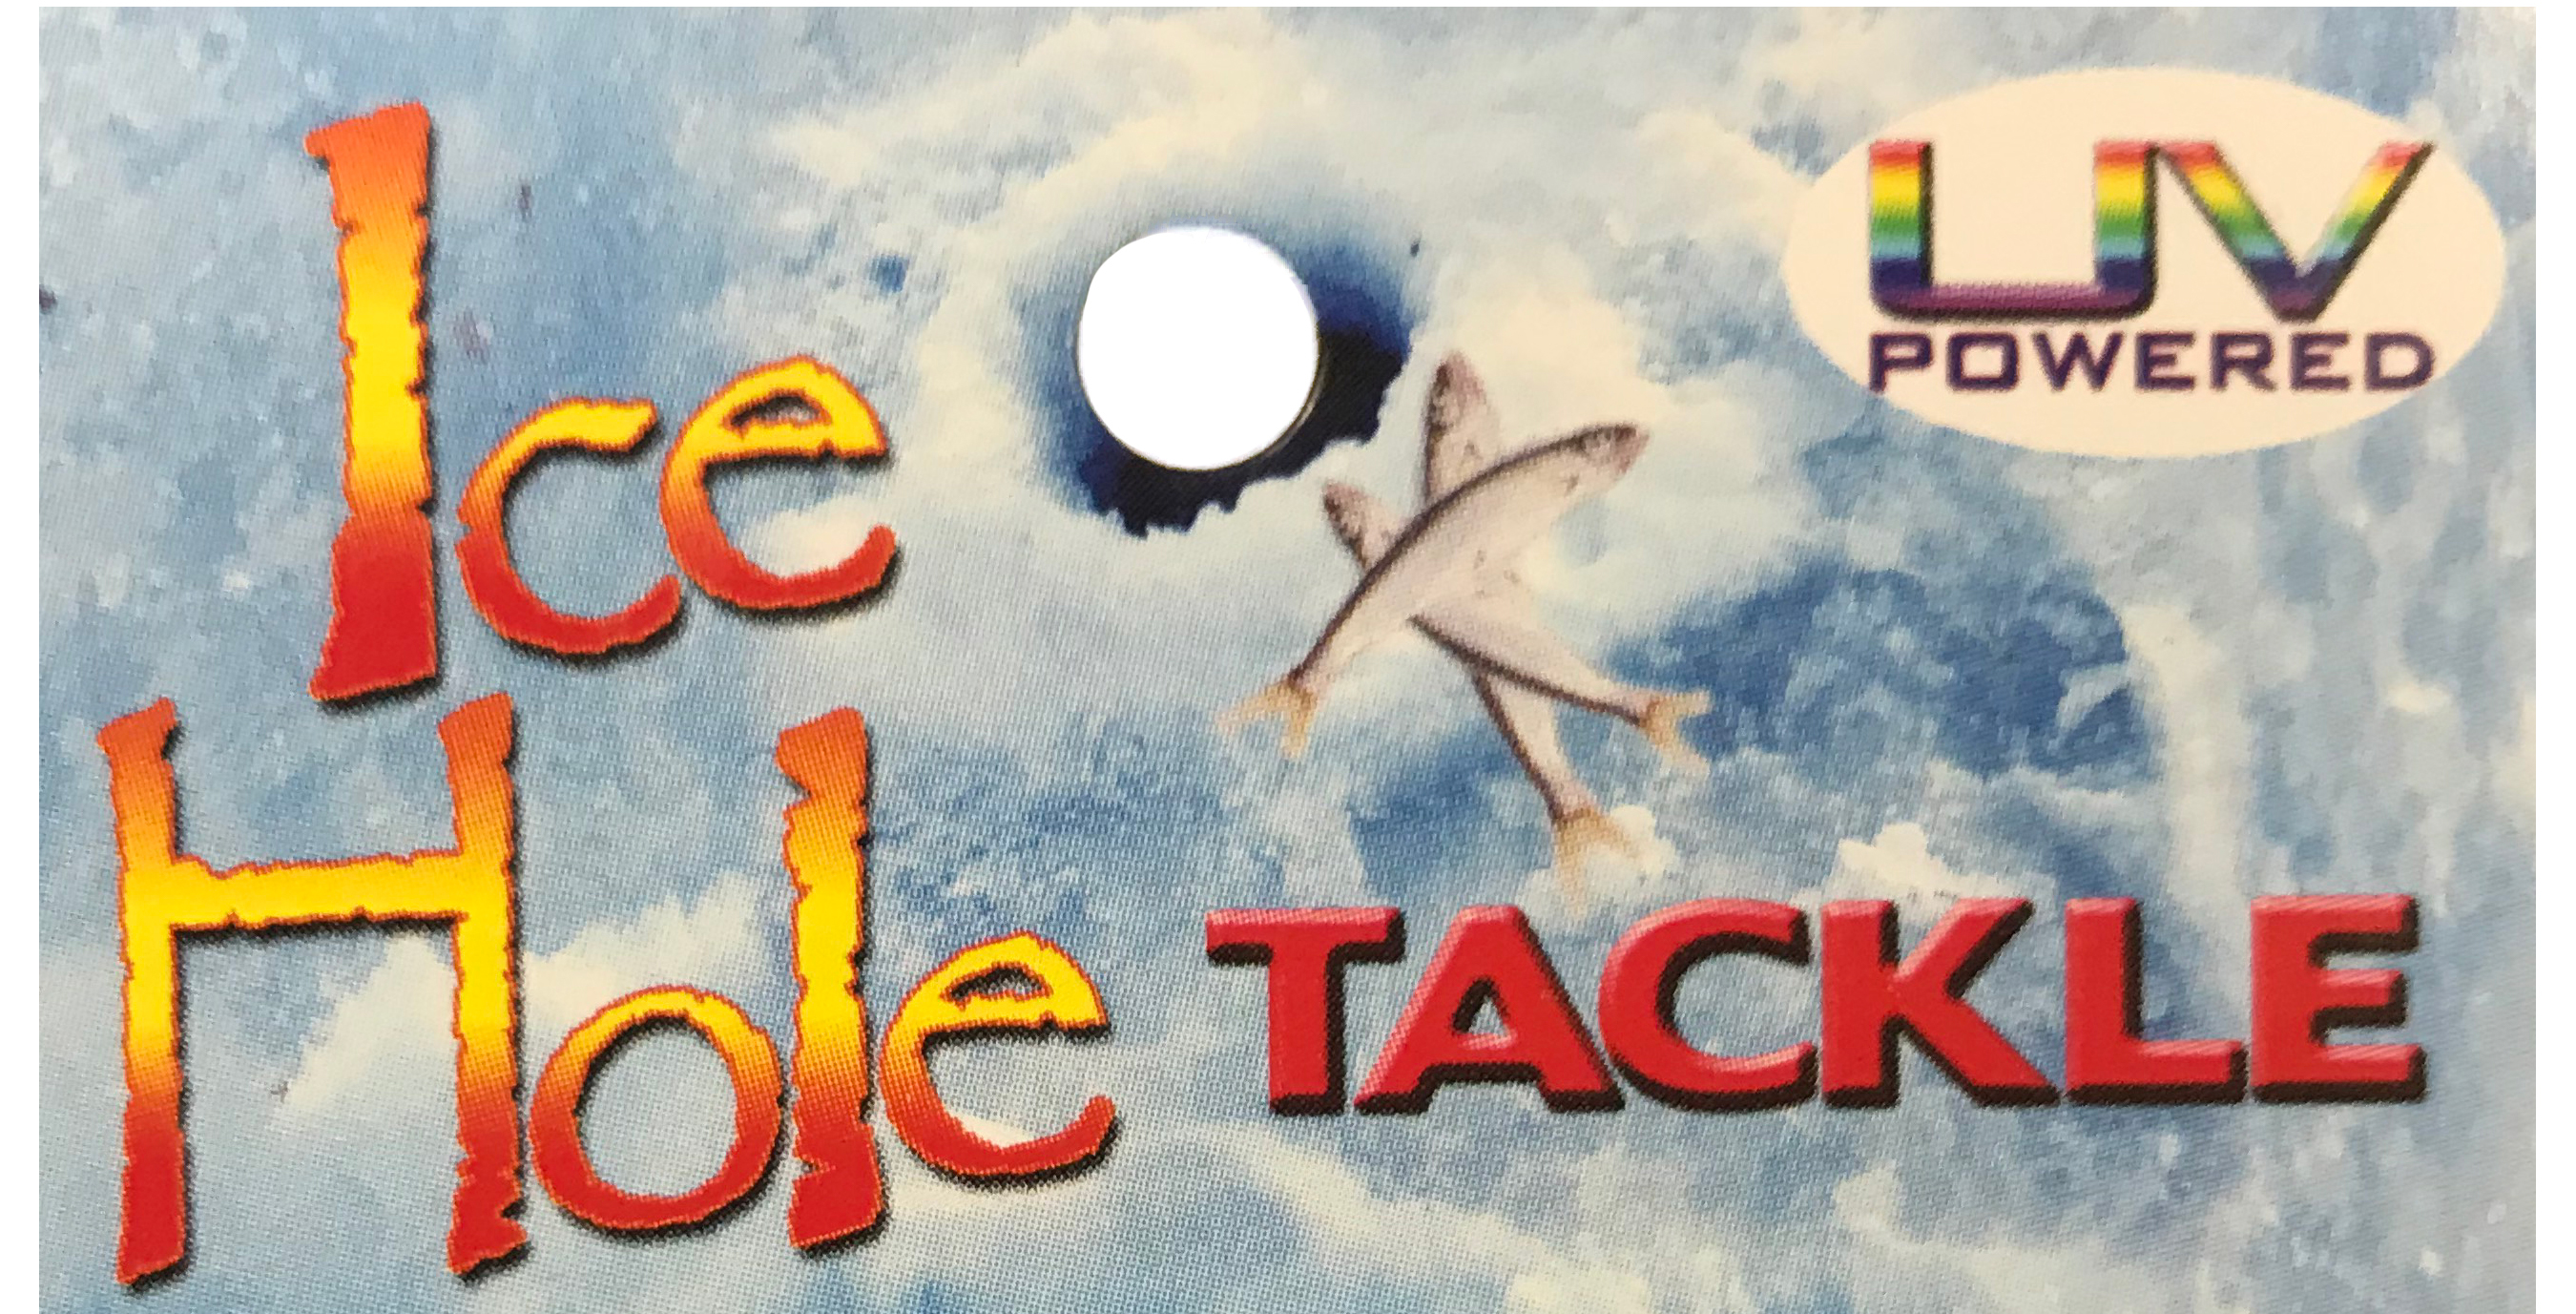 Ice Hole Tackle